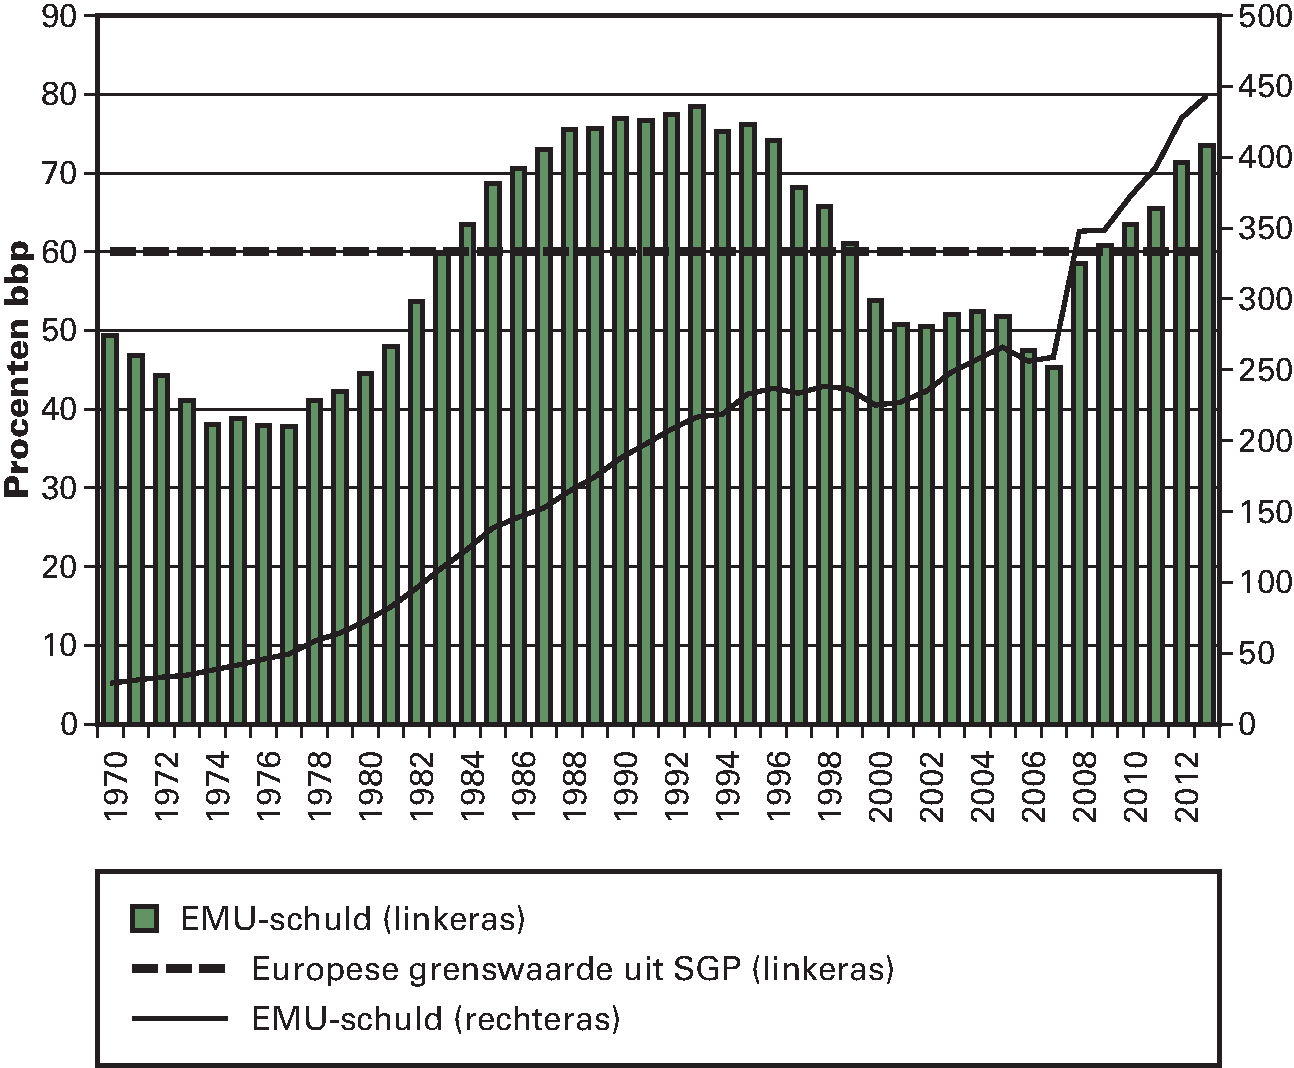 Figuur 2.4.3 Ontwikkeling EMU-schuld 1970–2013